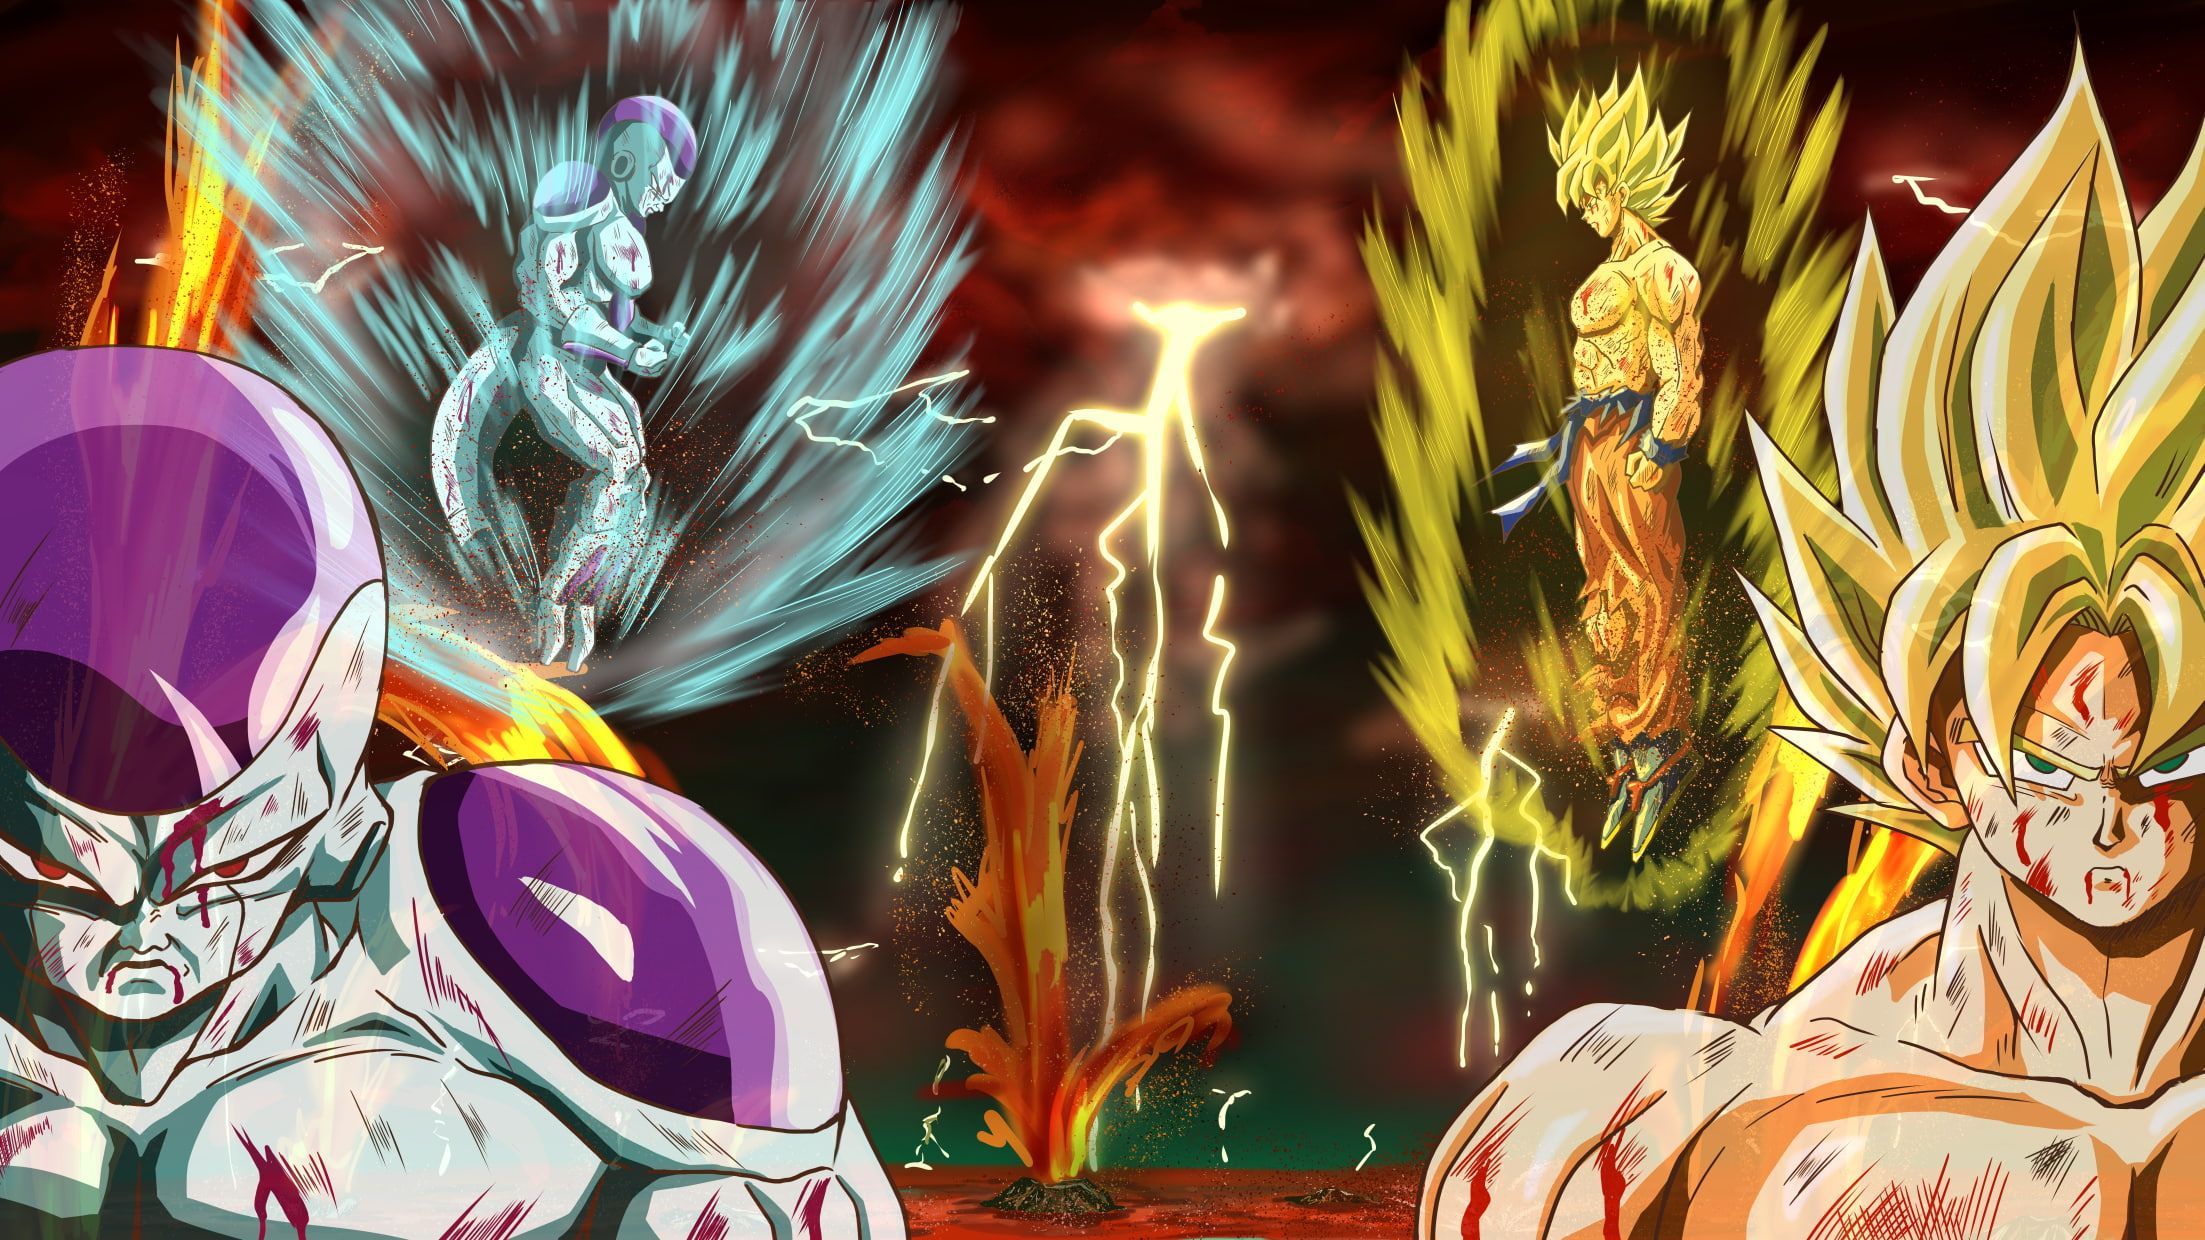 Goku Super Saiyan Vs Frieza Wallpaper